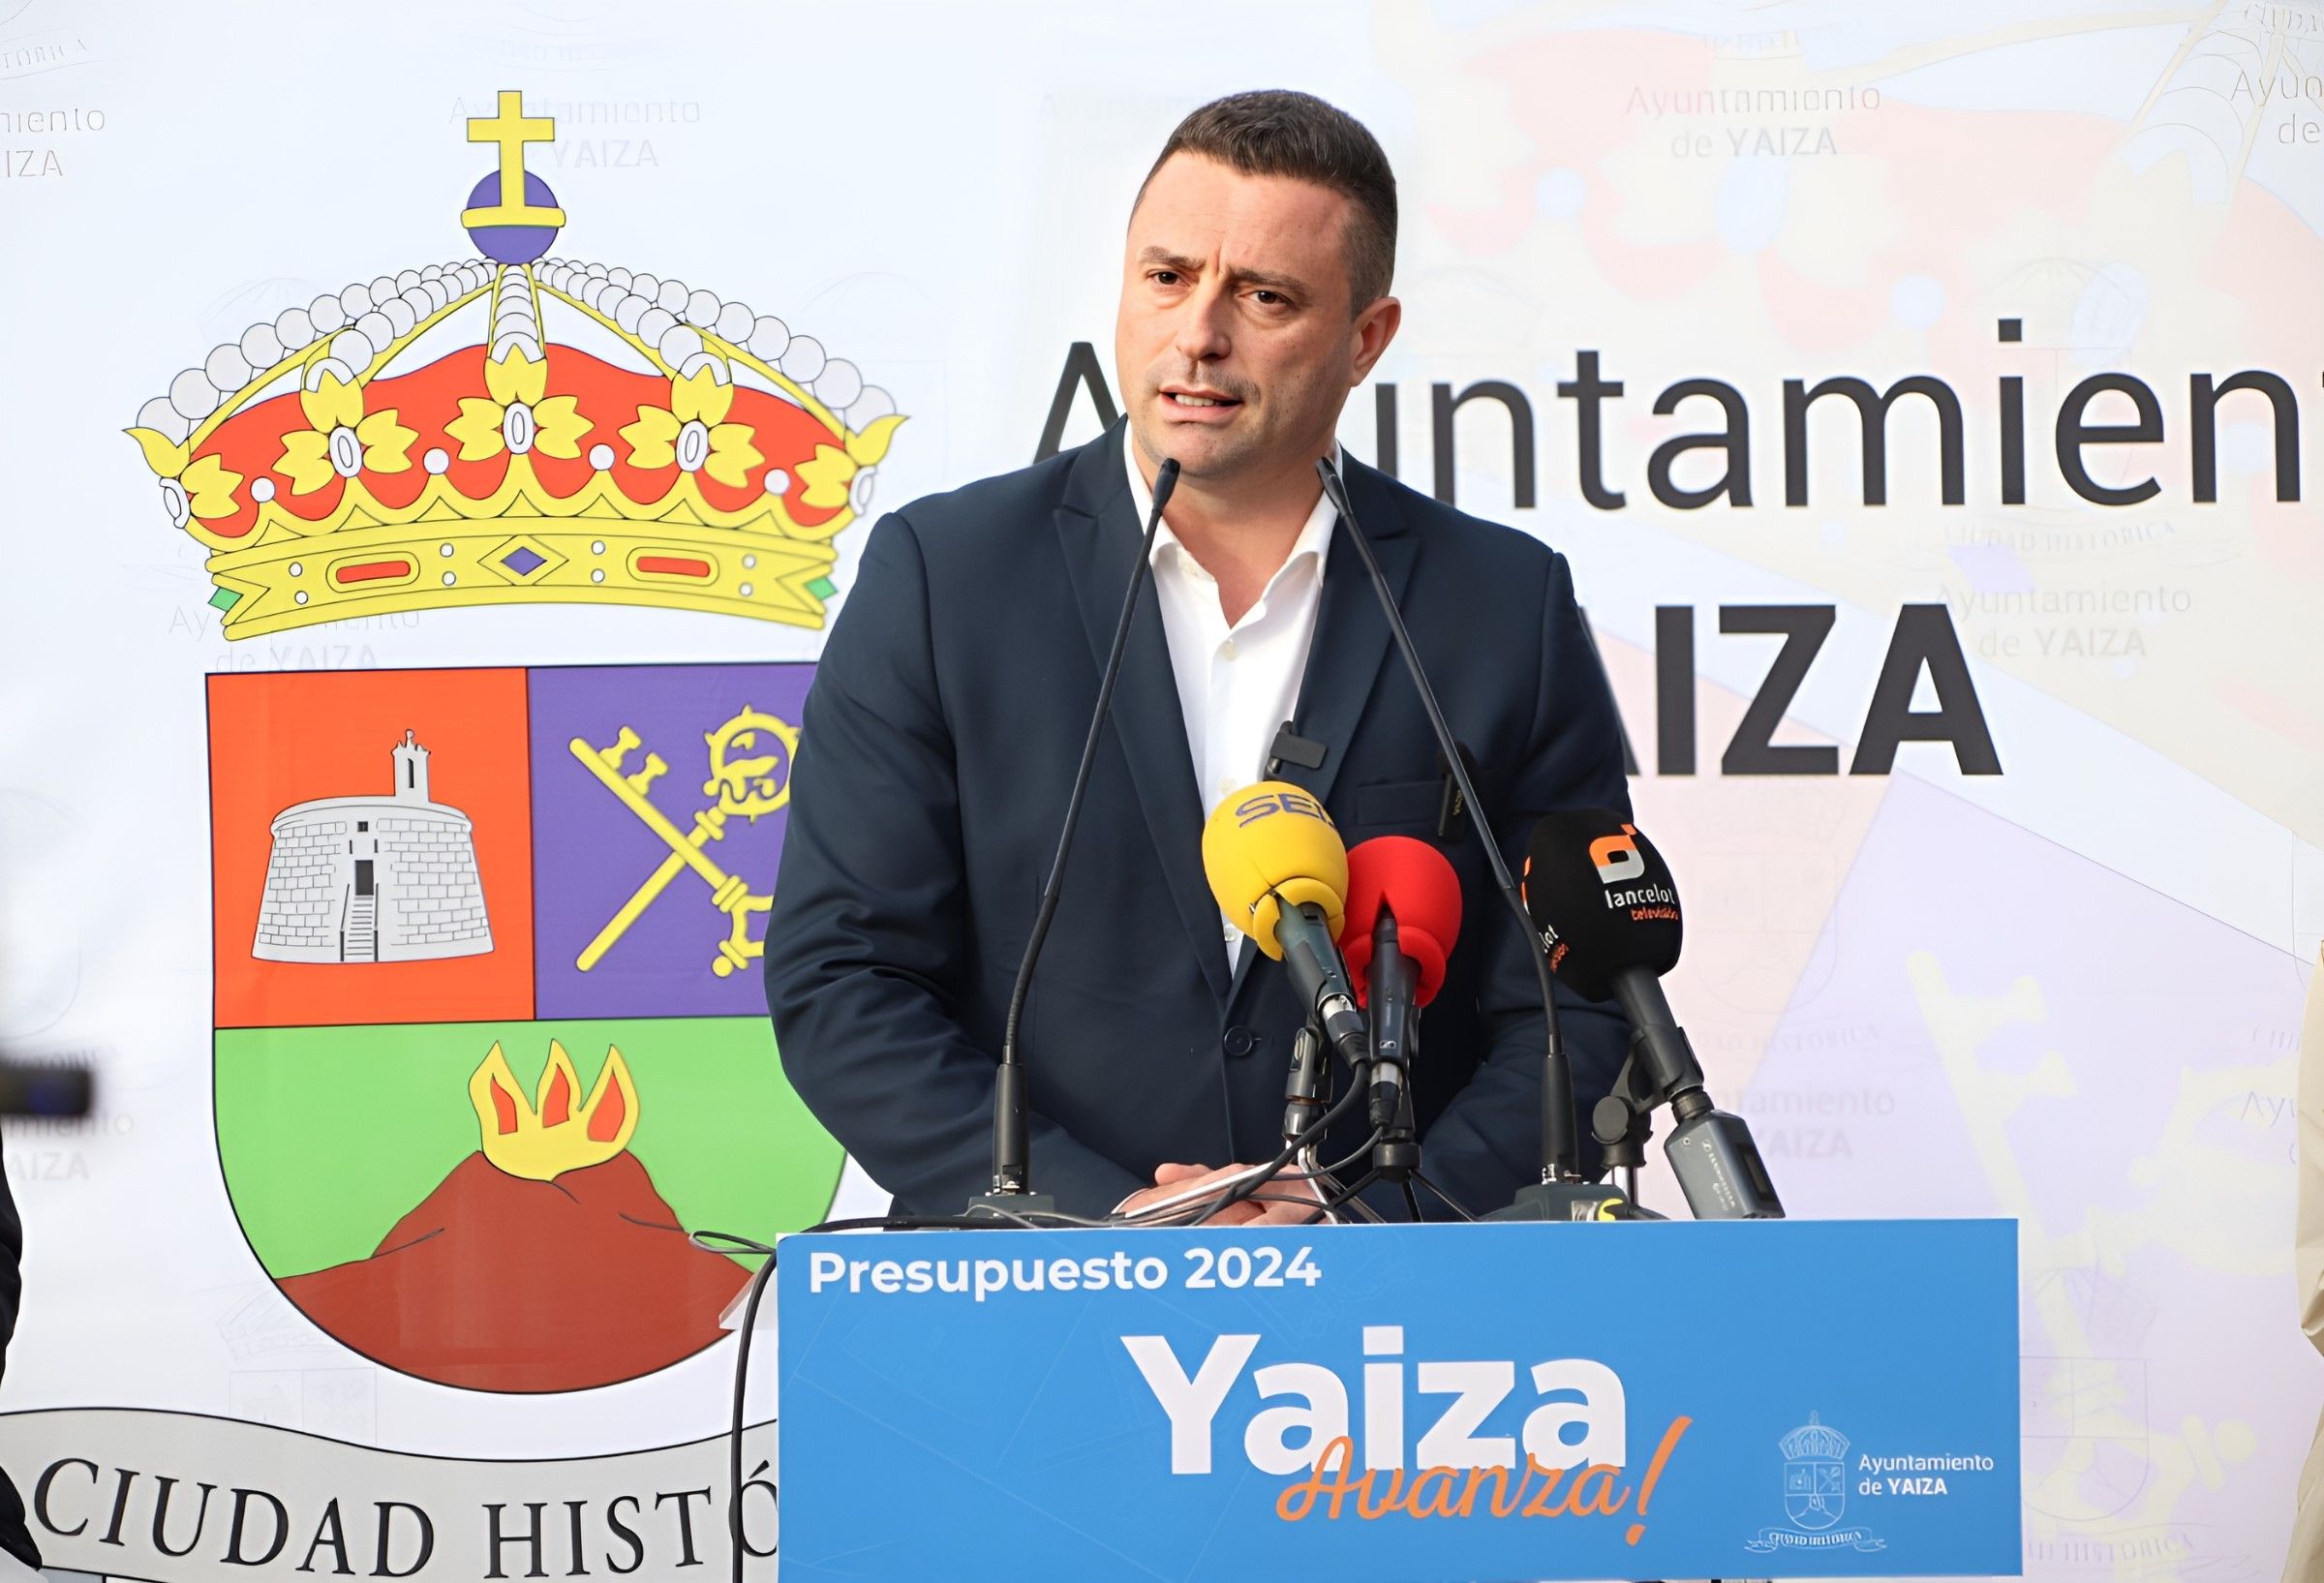 El alcalde de Yaiza, Óscar Noda, ha desglosado este viernes en rueda de prensa el Presupuesto municipal 2024